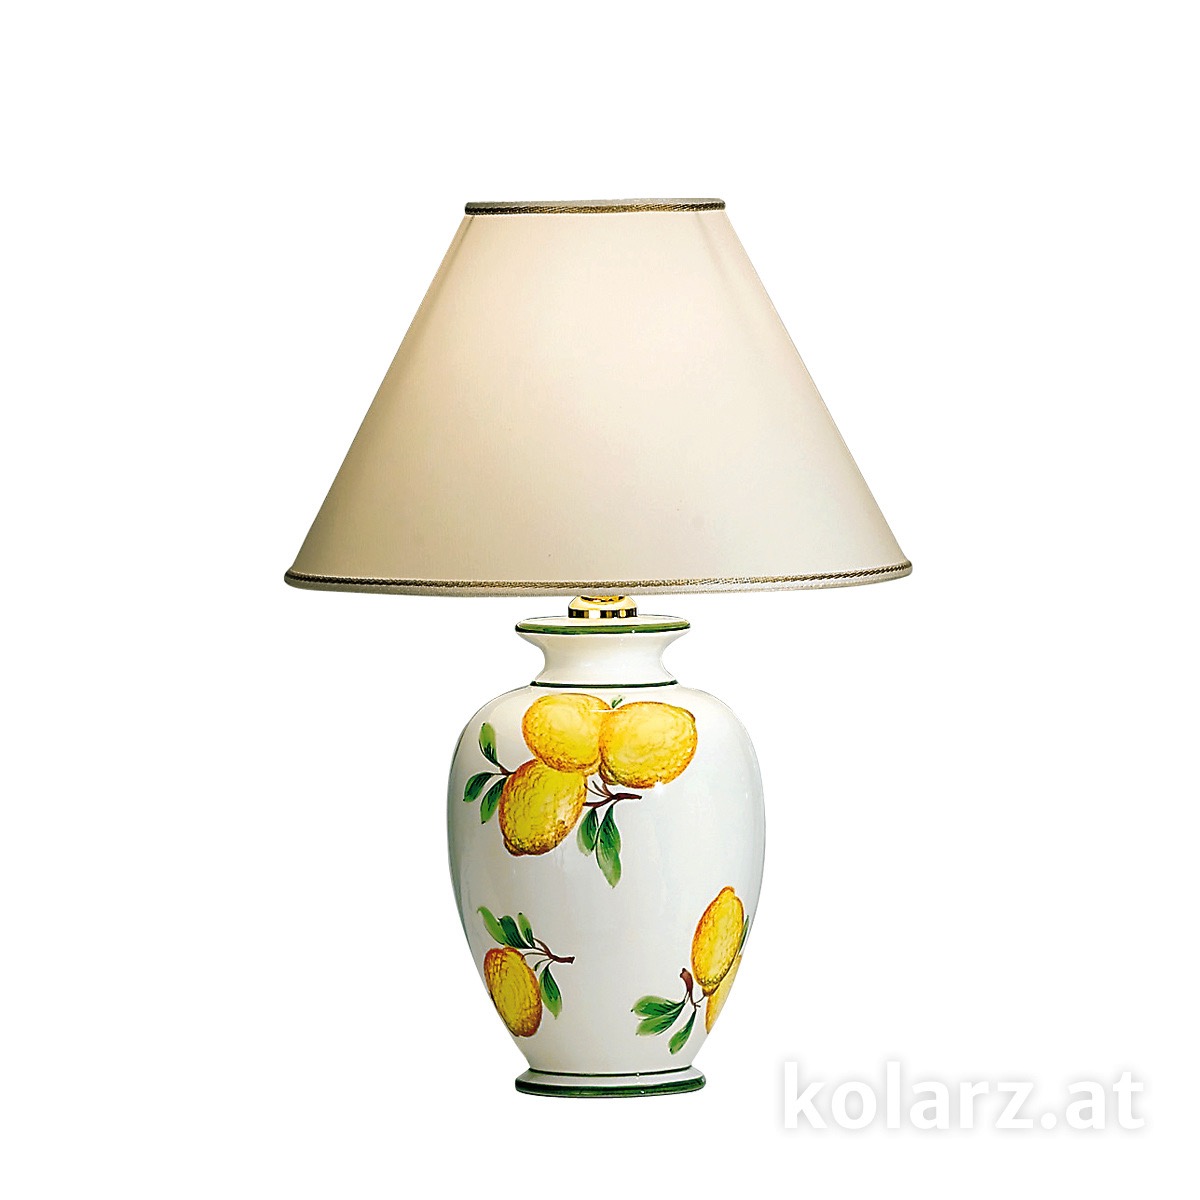 KOLARZ LeuchtenTischleuchte | table lamp Giardino -Limoni